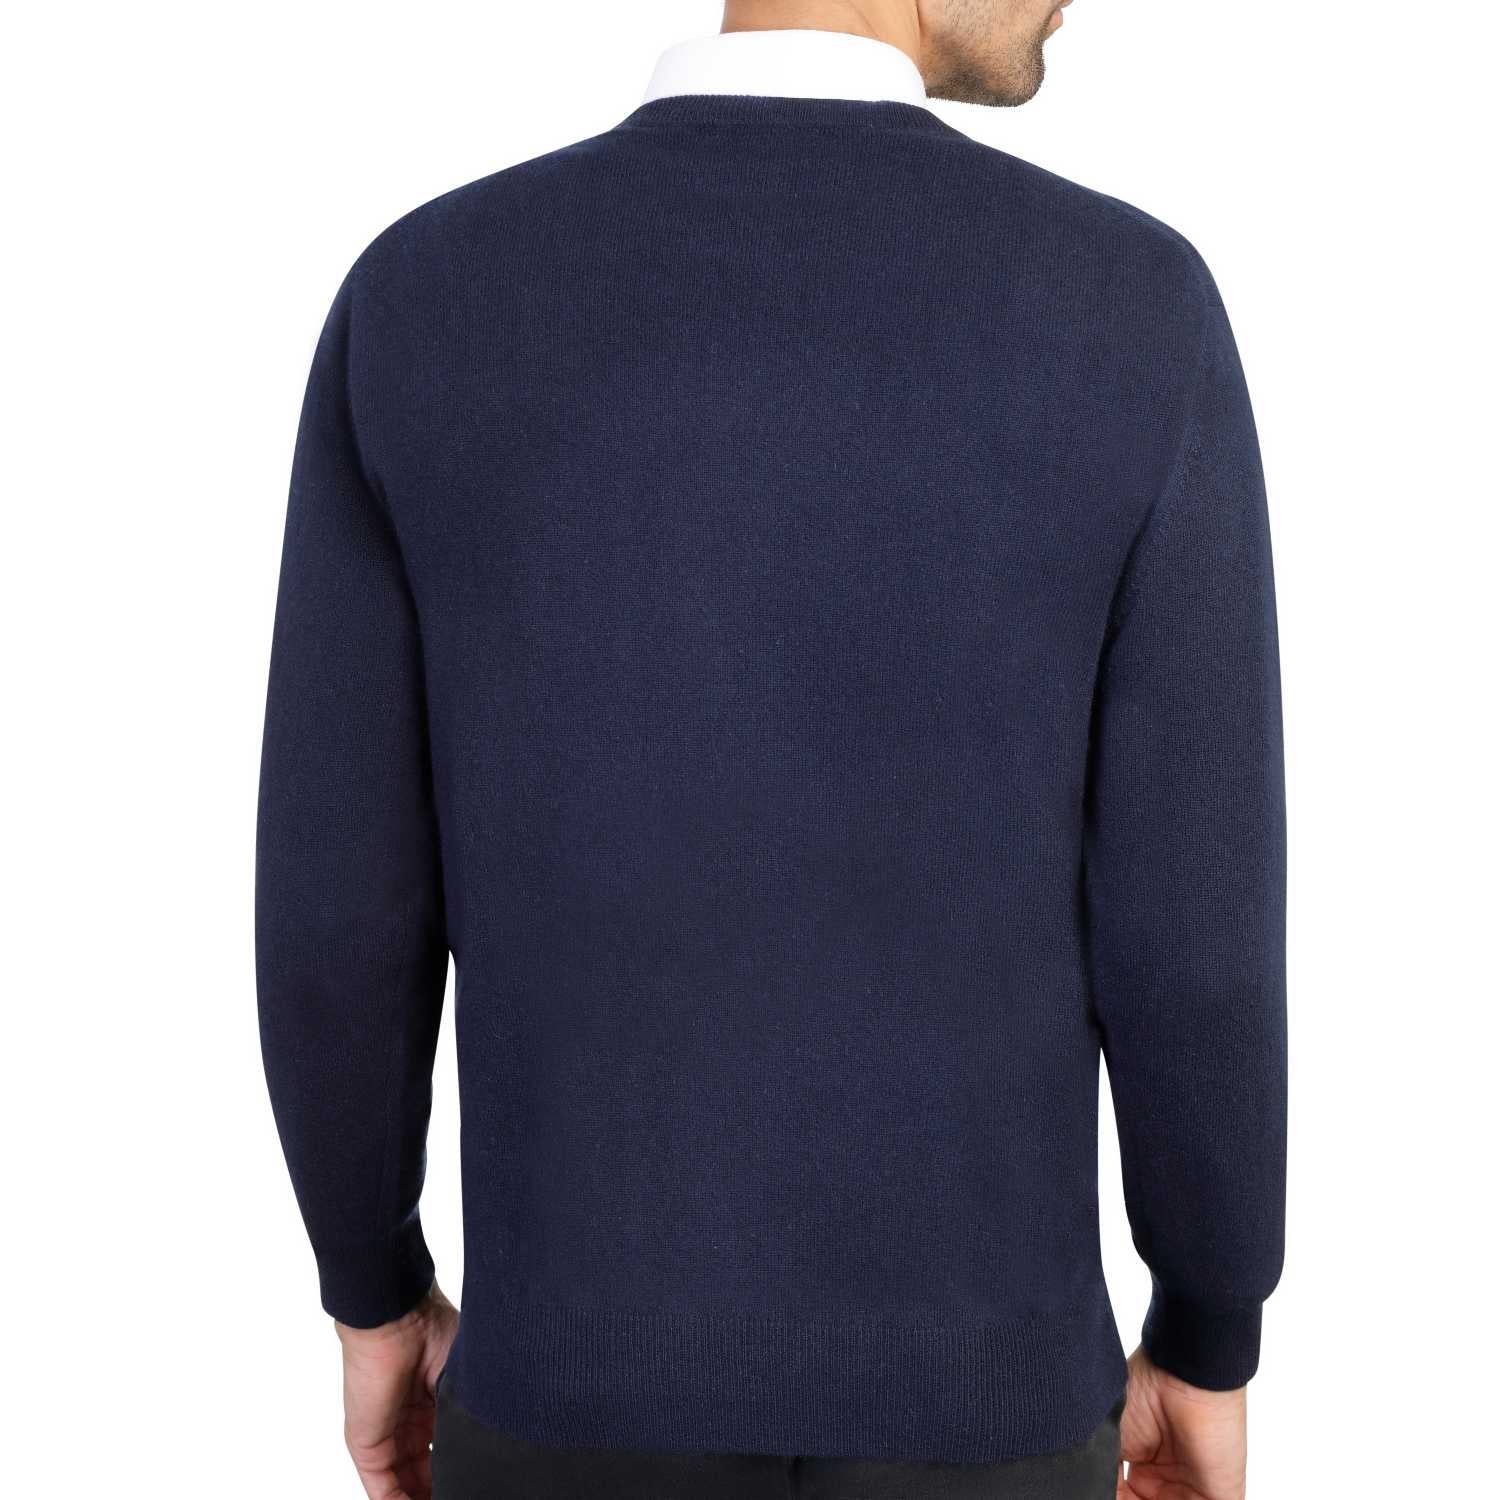 Mens cashmere v neck jumpers - navy blue 